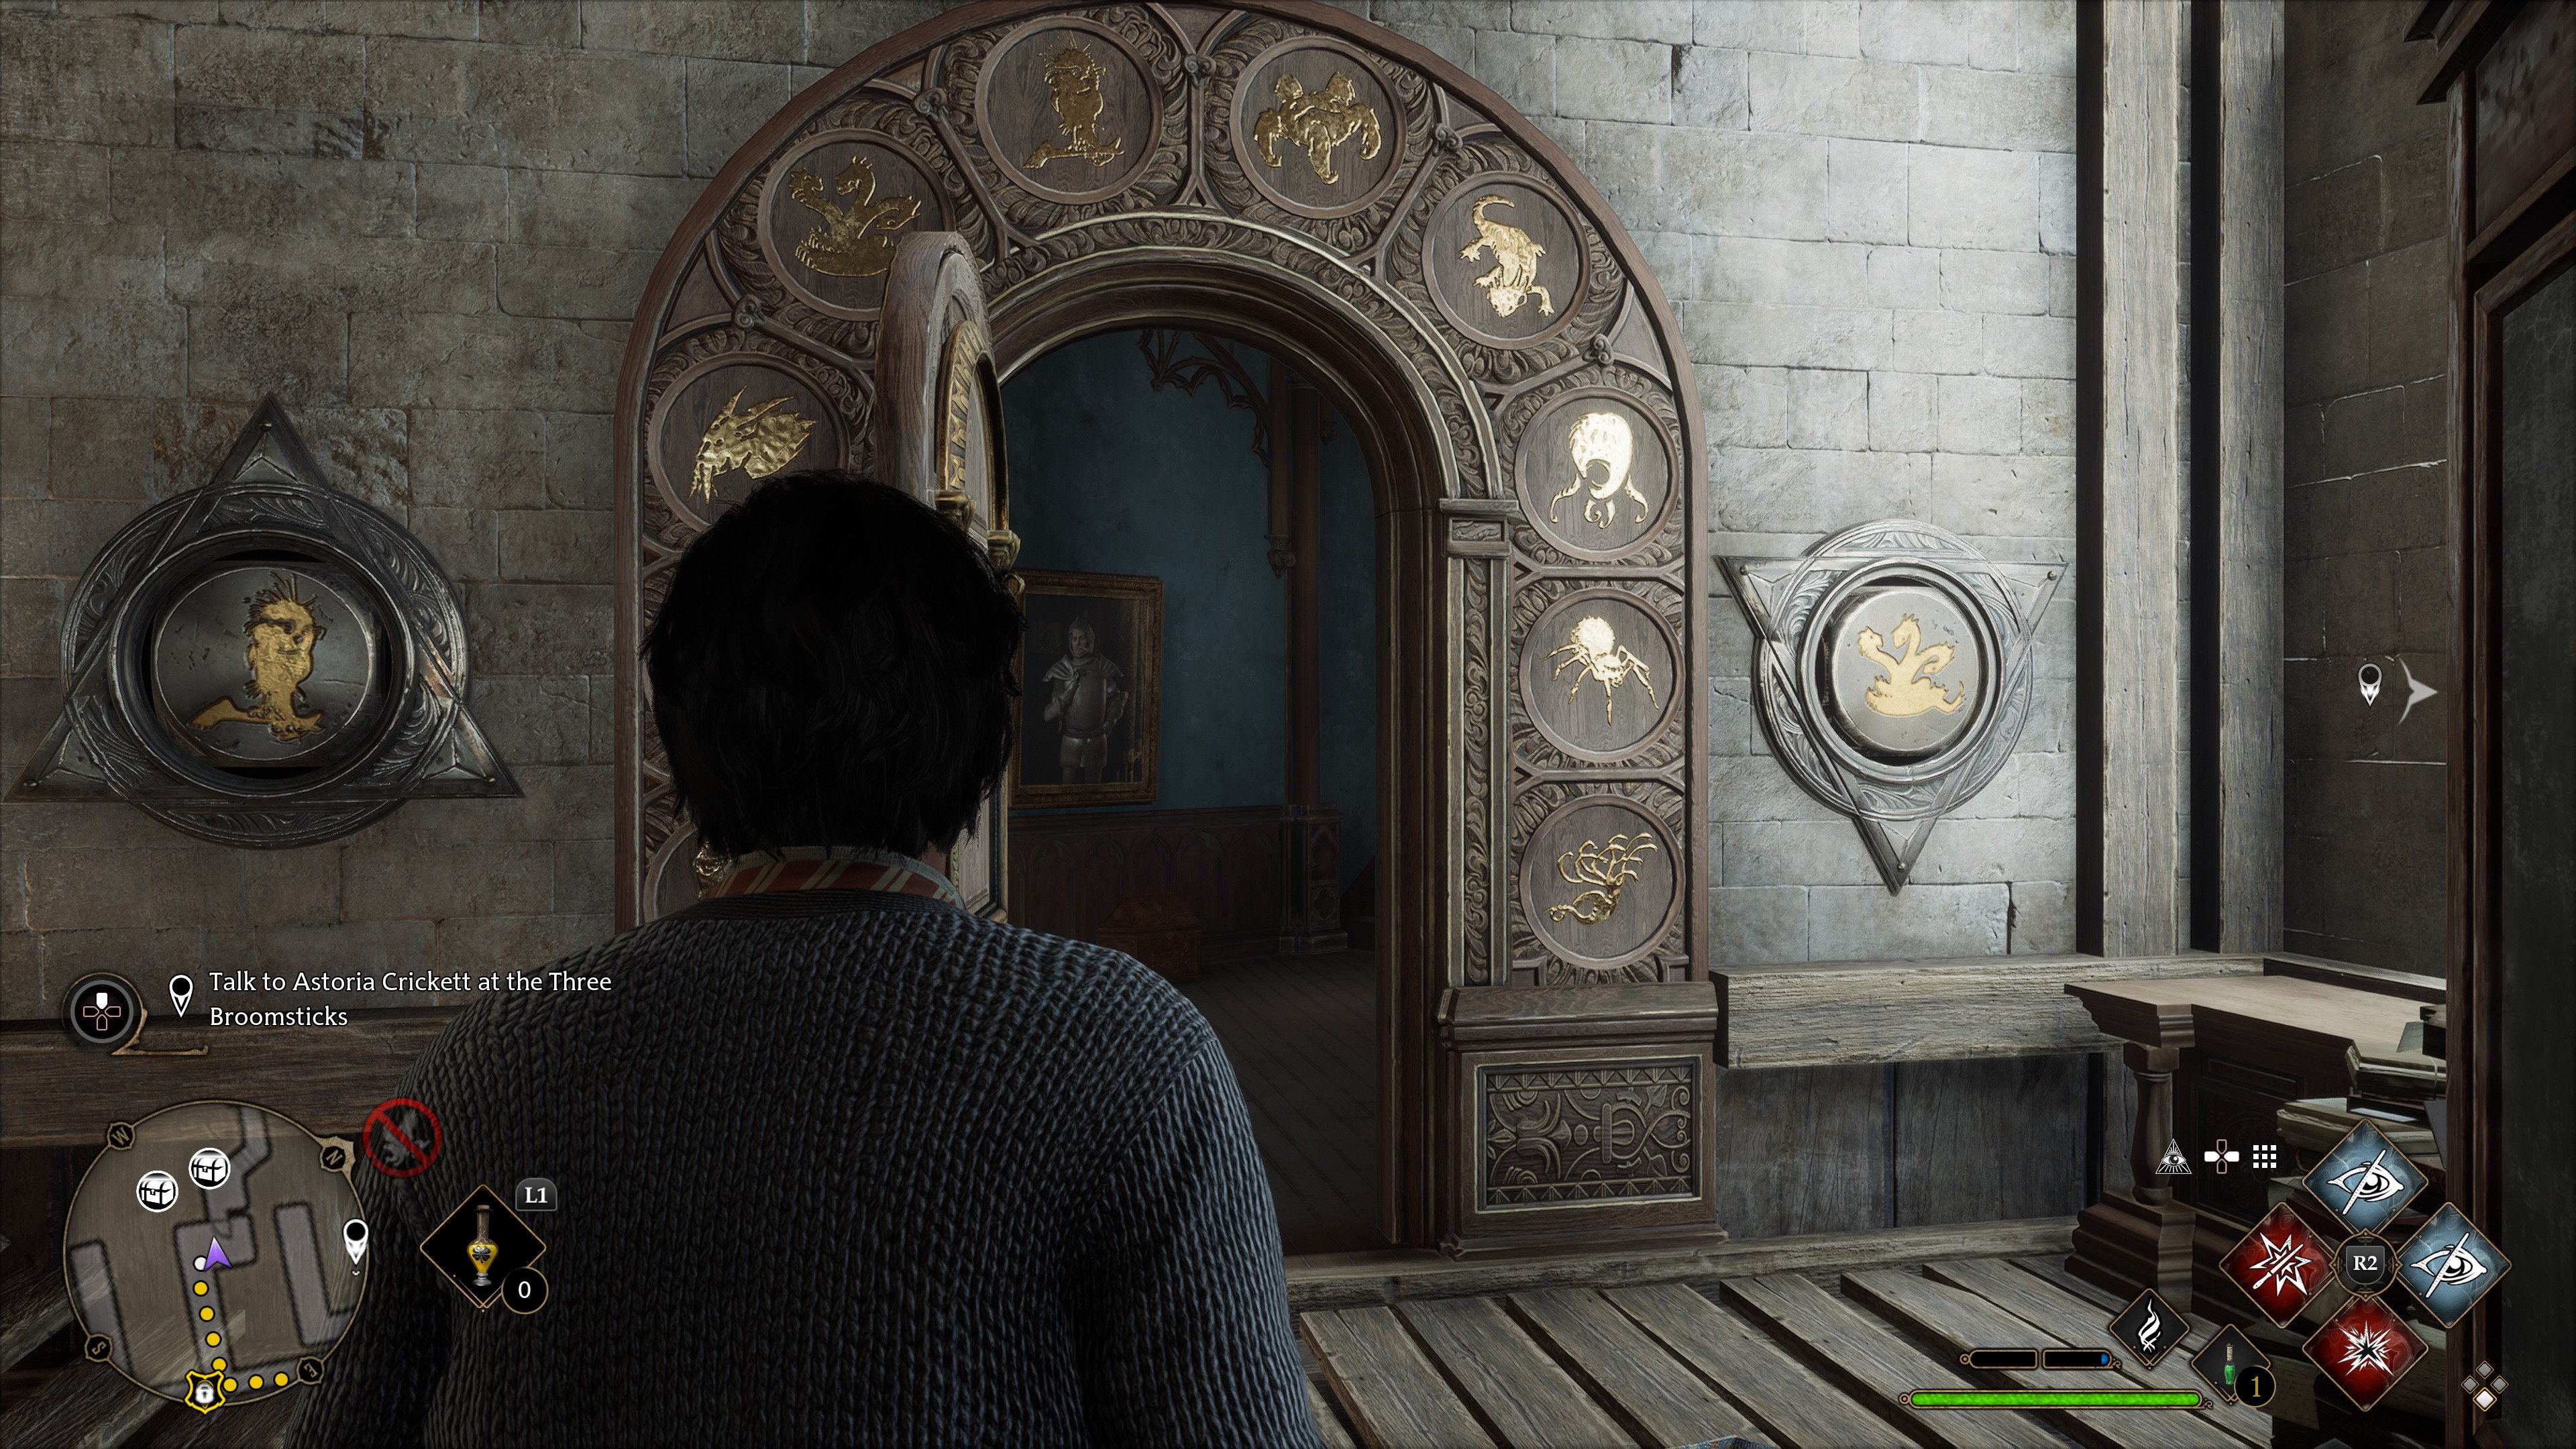 Hogwarts Legac: How To Solve The Puzzle Doors (Arithmancy Door)